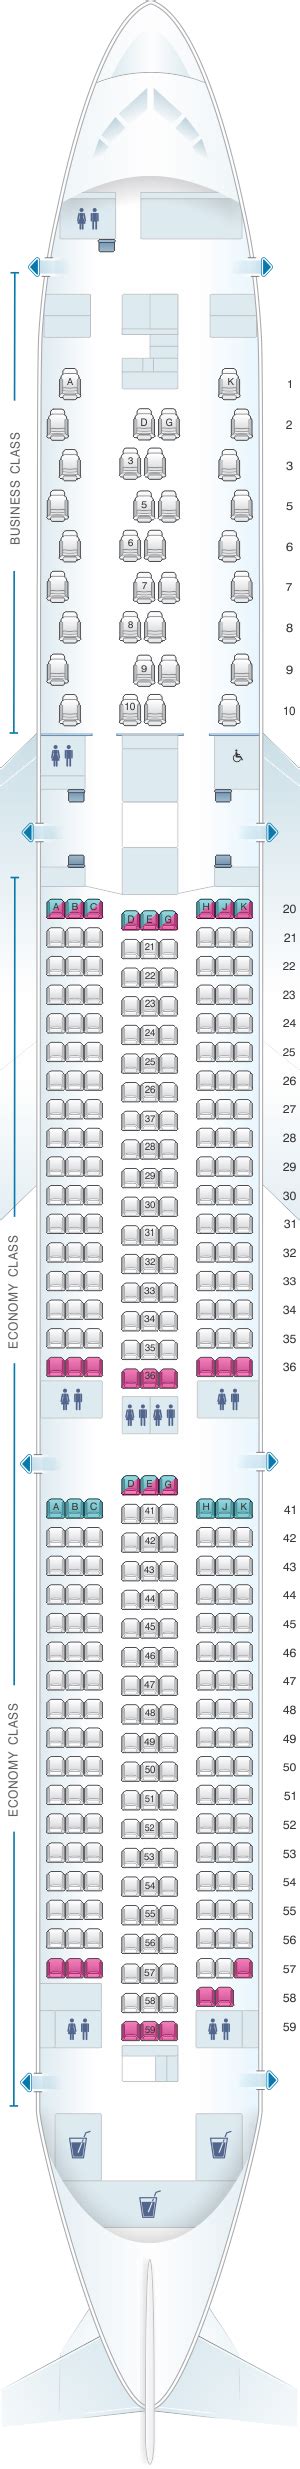 eva air 787 seat map